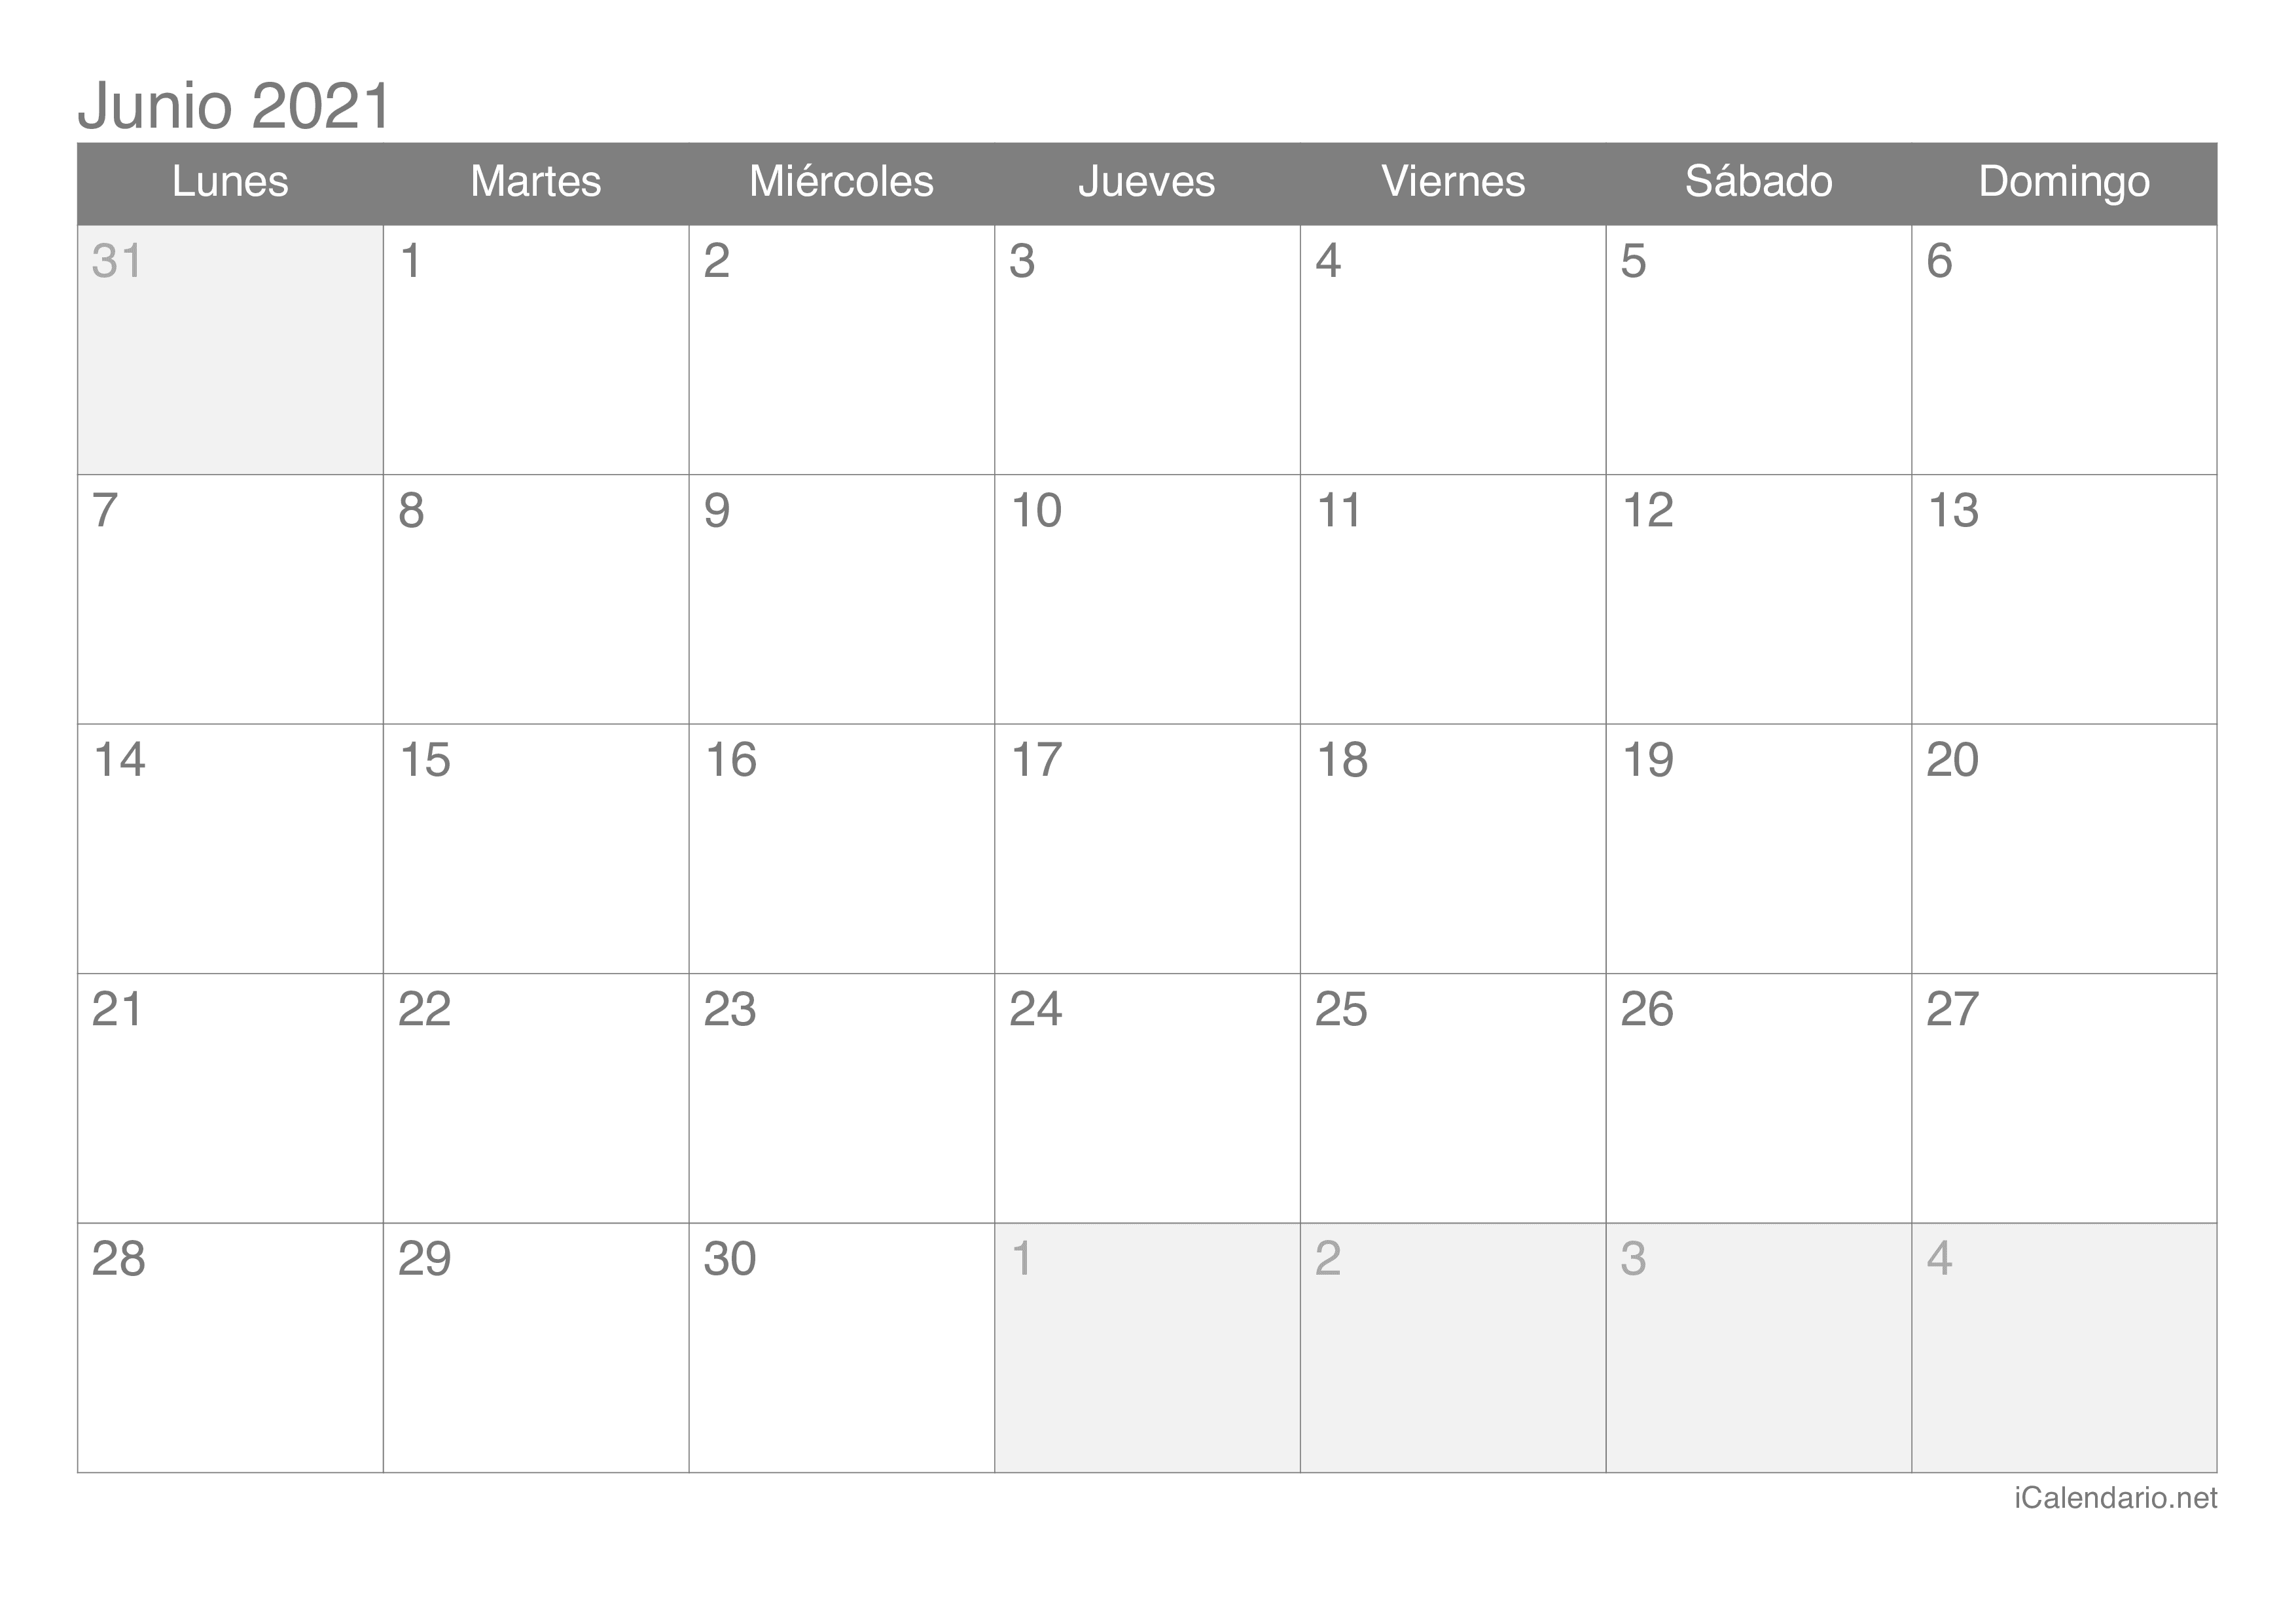 Calendario junio 2021 para imprimir - iCalendario.net